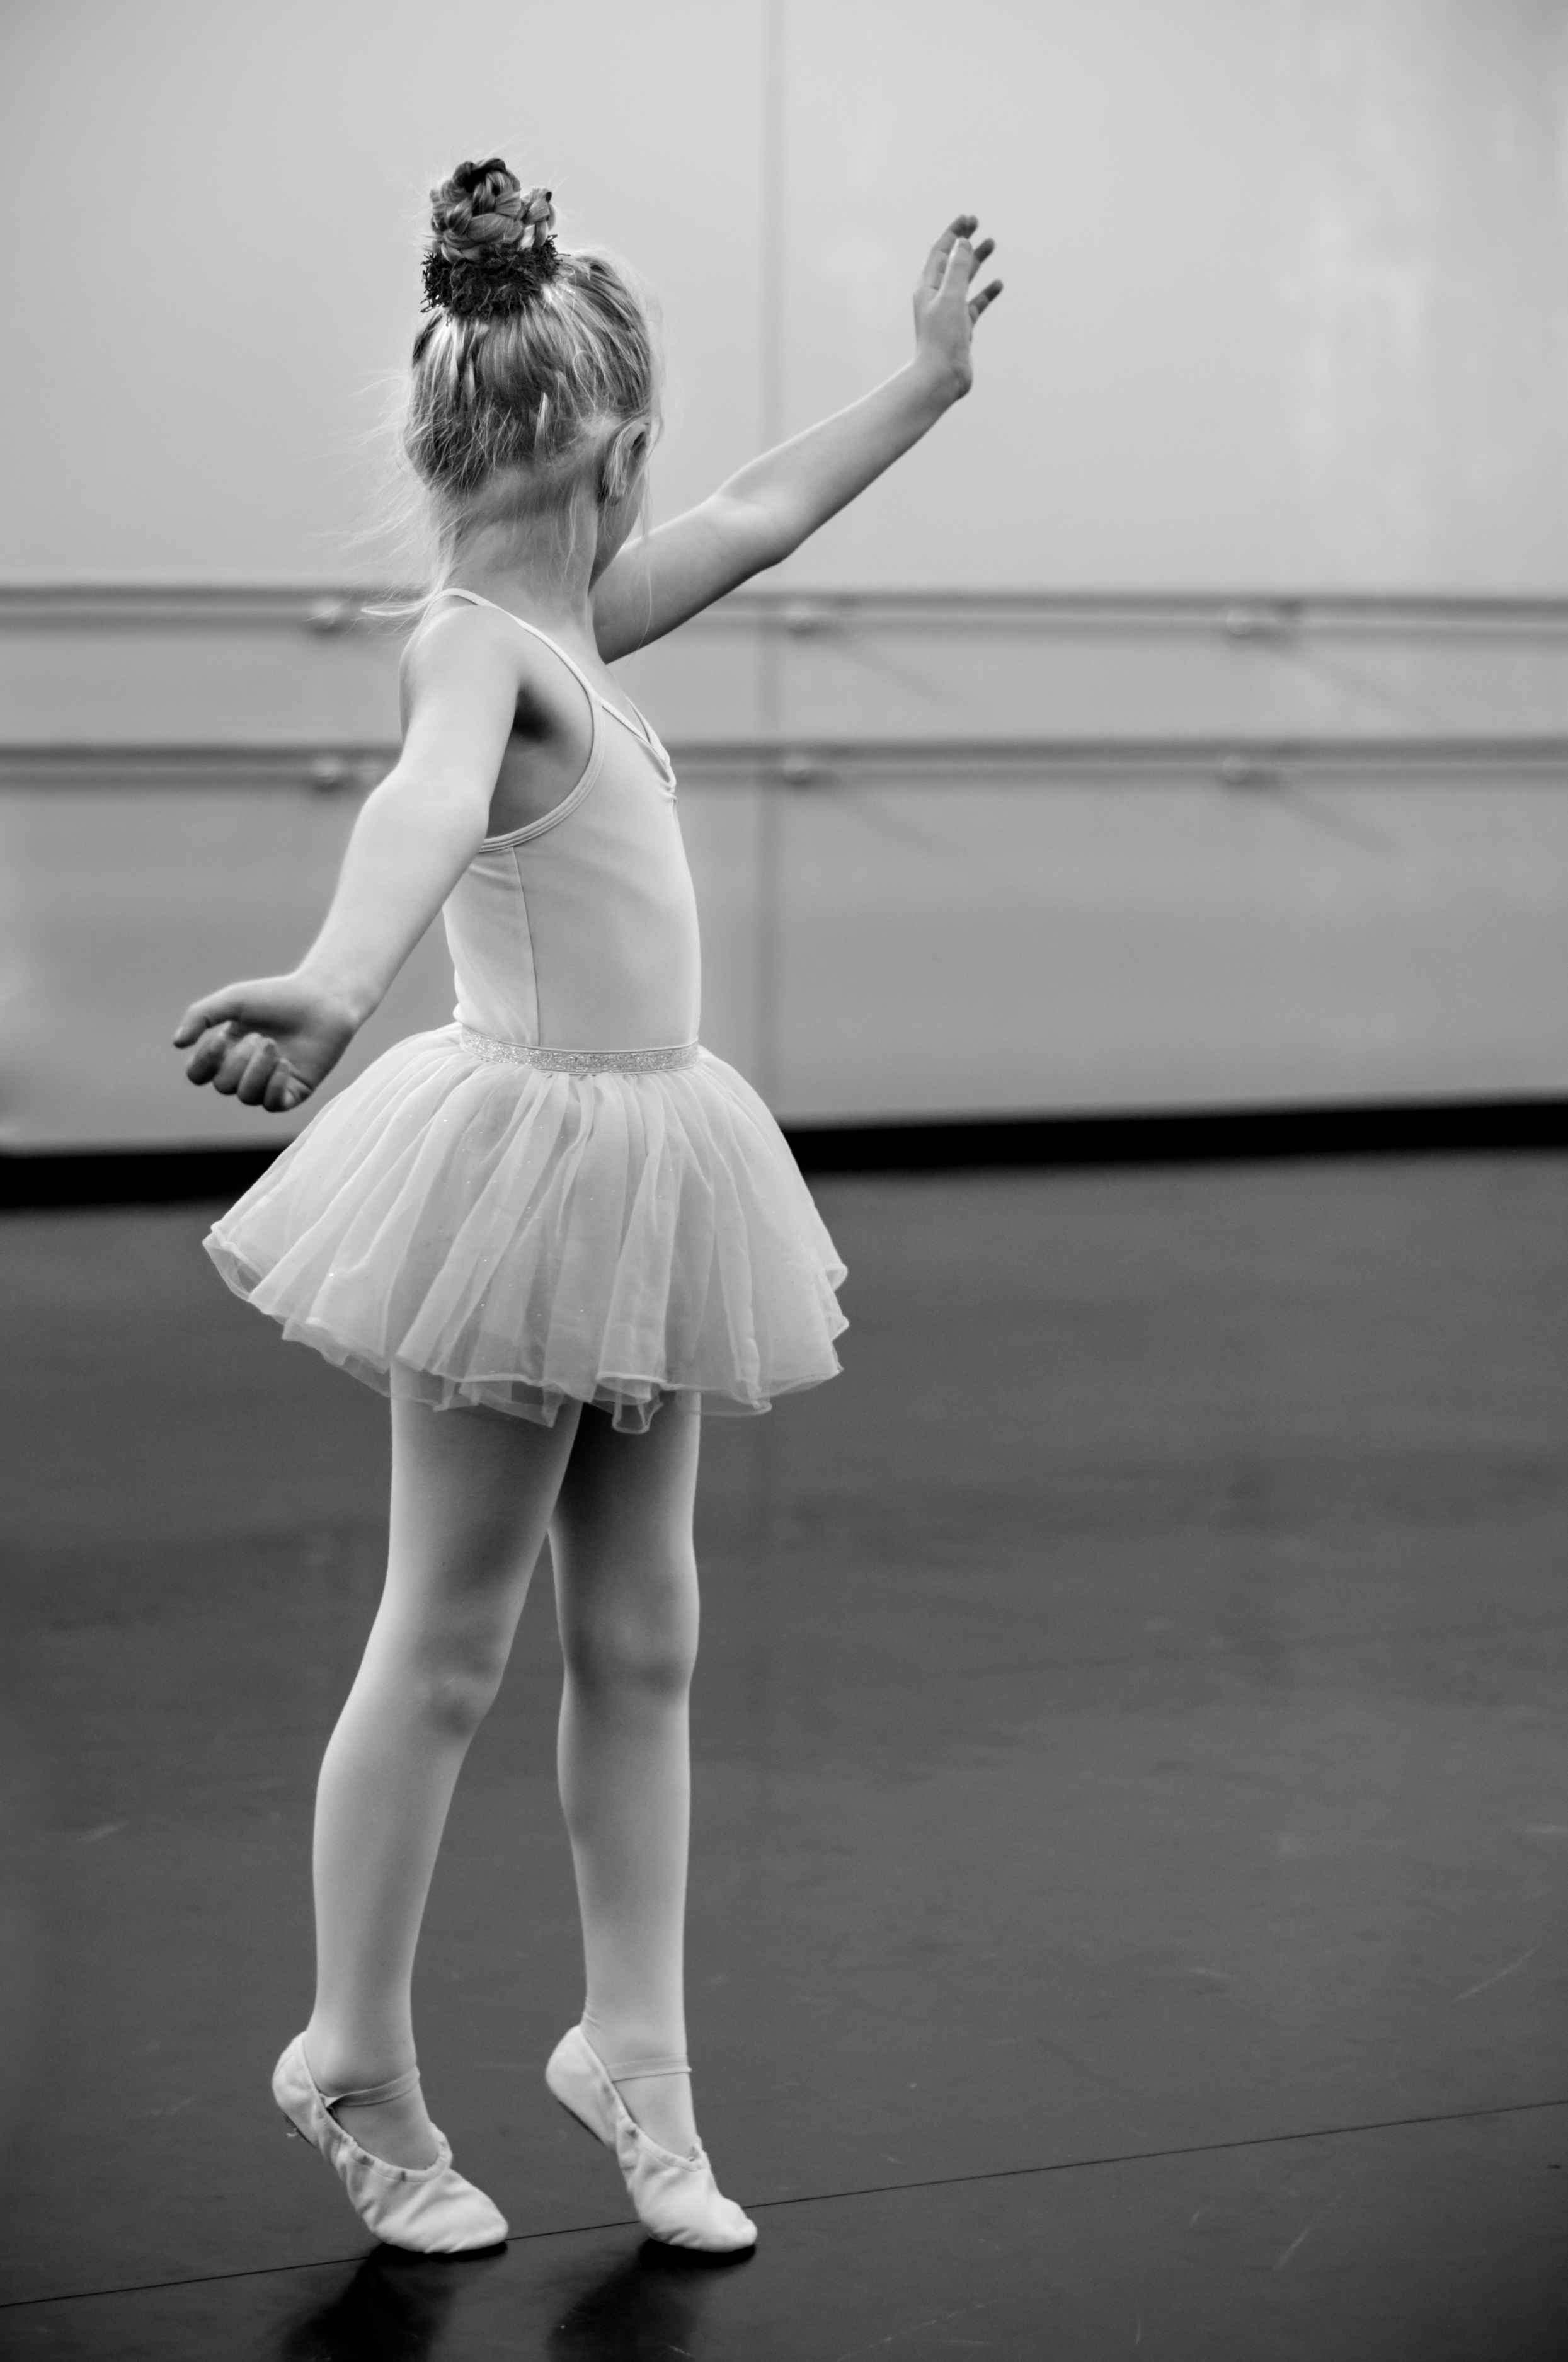 Eine gute Haltung lernen Kinder im Ballett